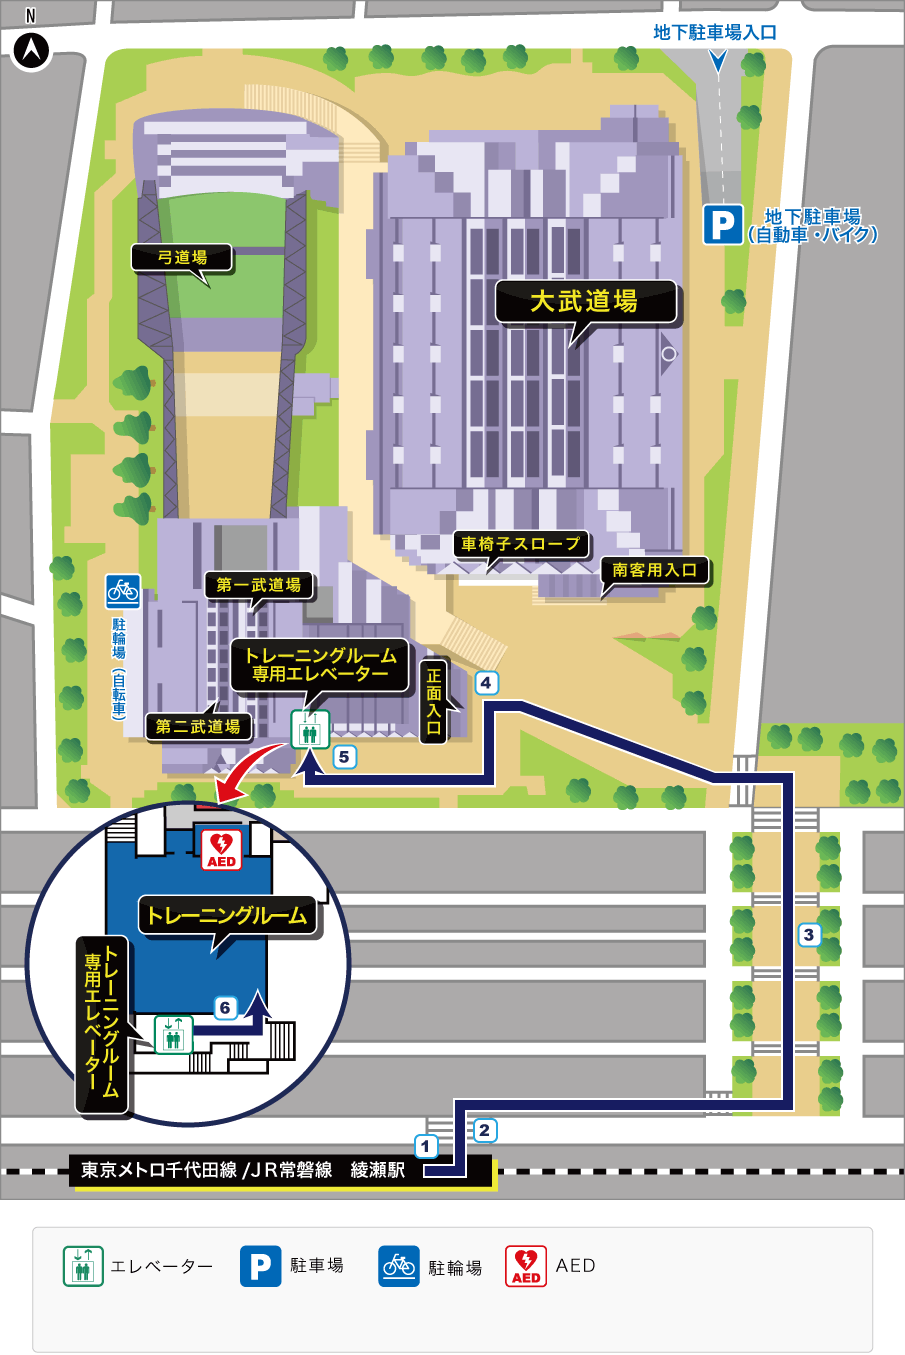 綾瀬駅からトレーニングルームへのルート案内見取り図